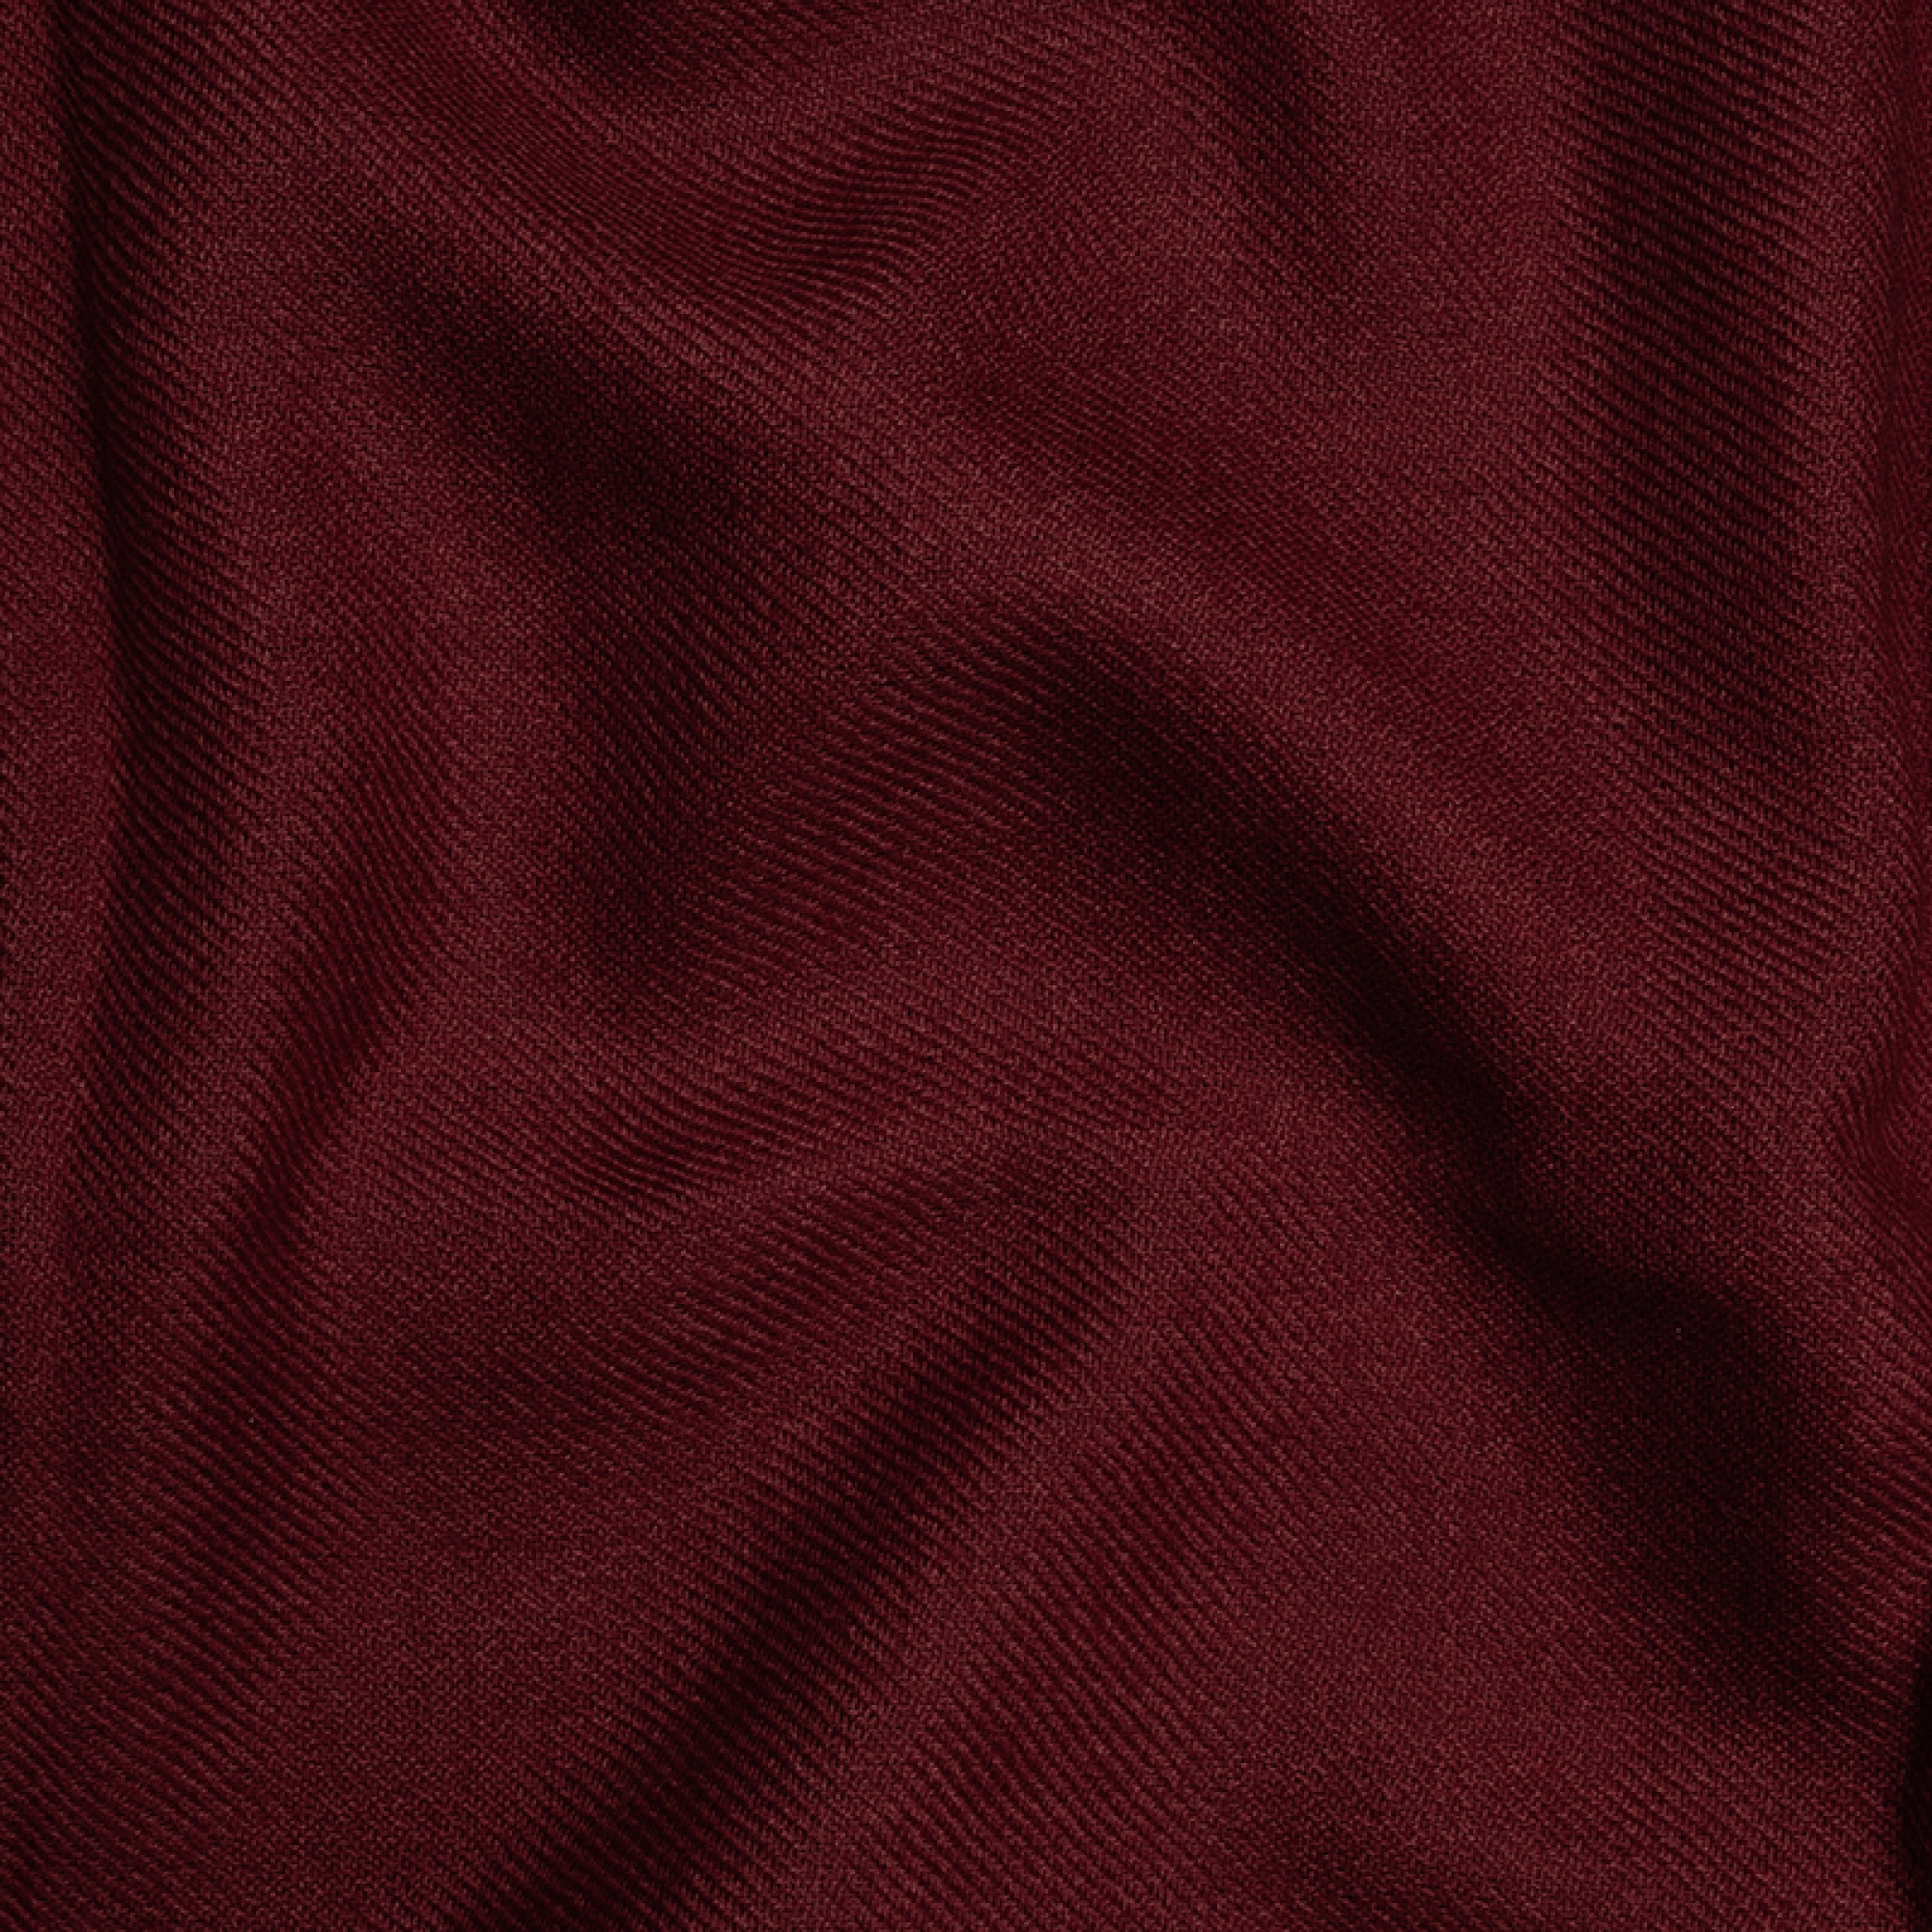 Cashmere cashmere donna toodoo plain m 180 x 220 rosso rame profondo 180 x 220 cm